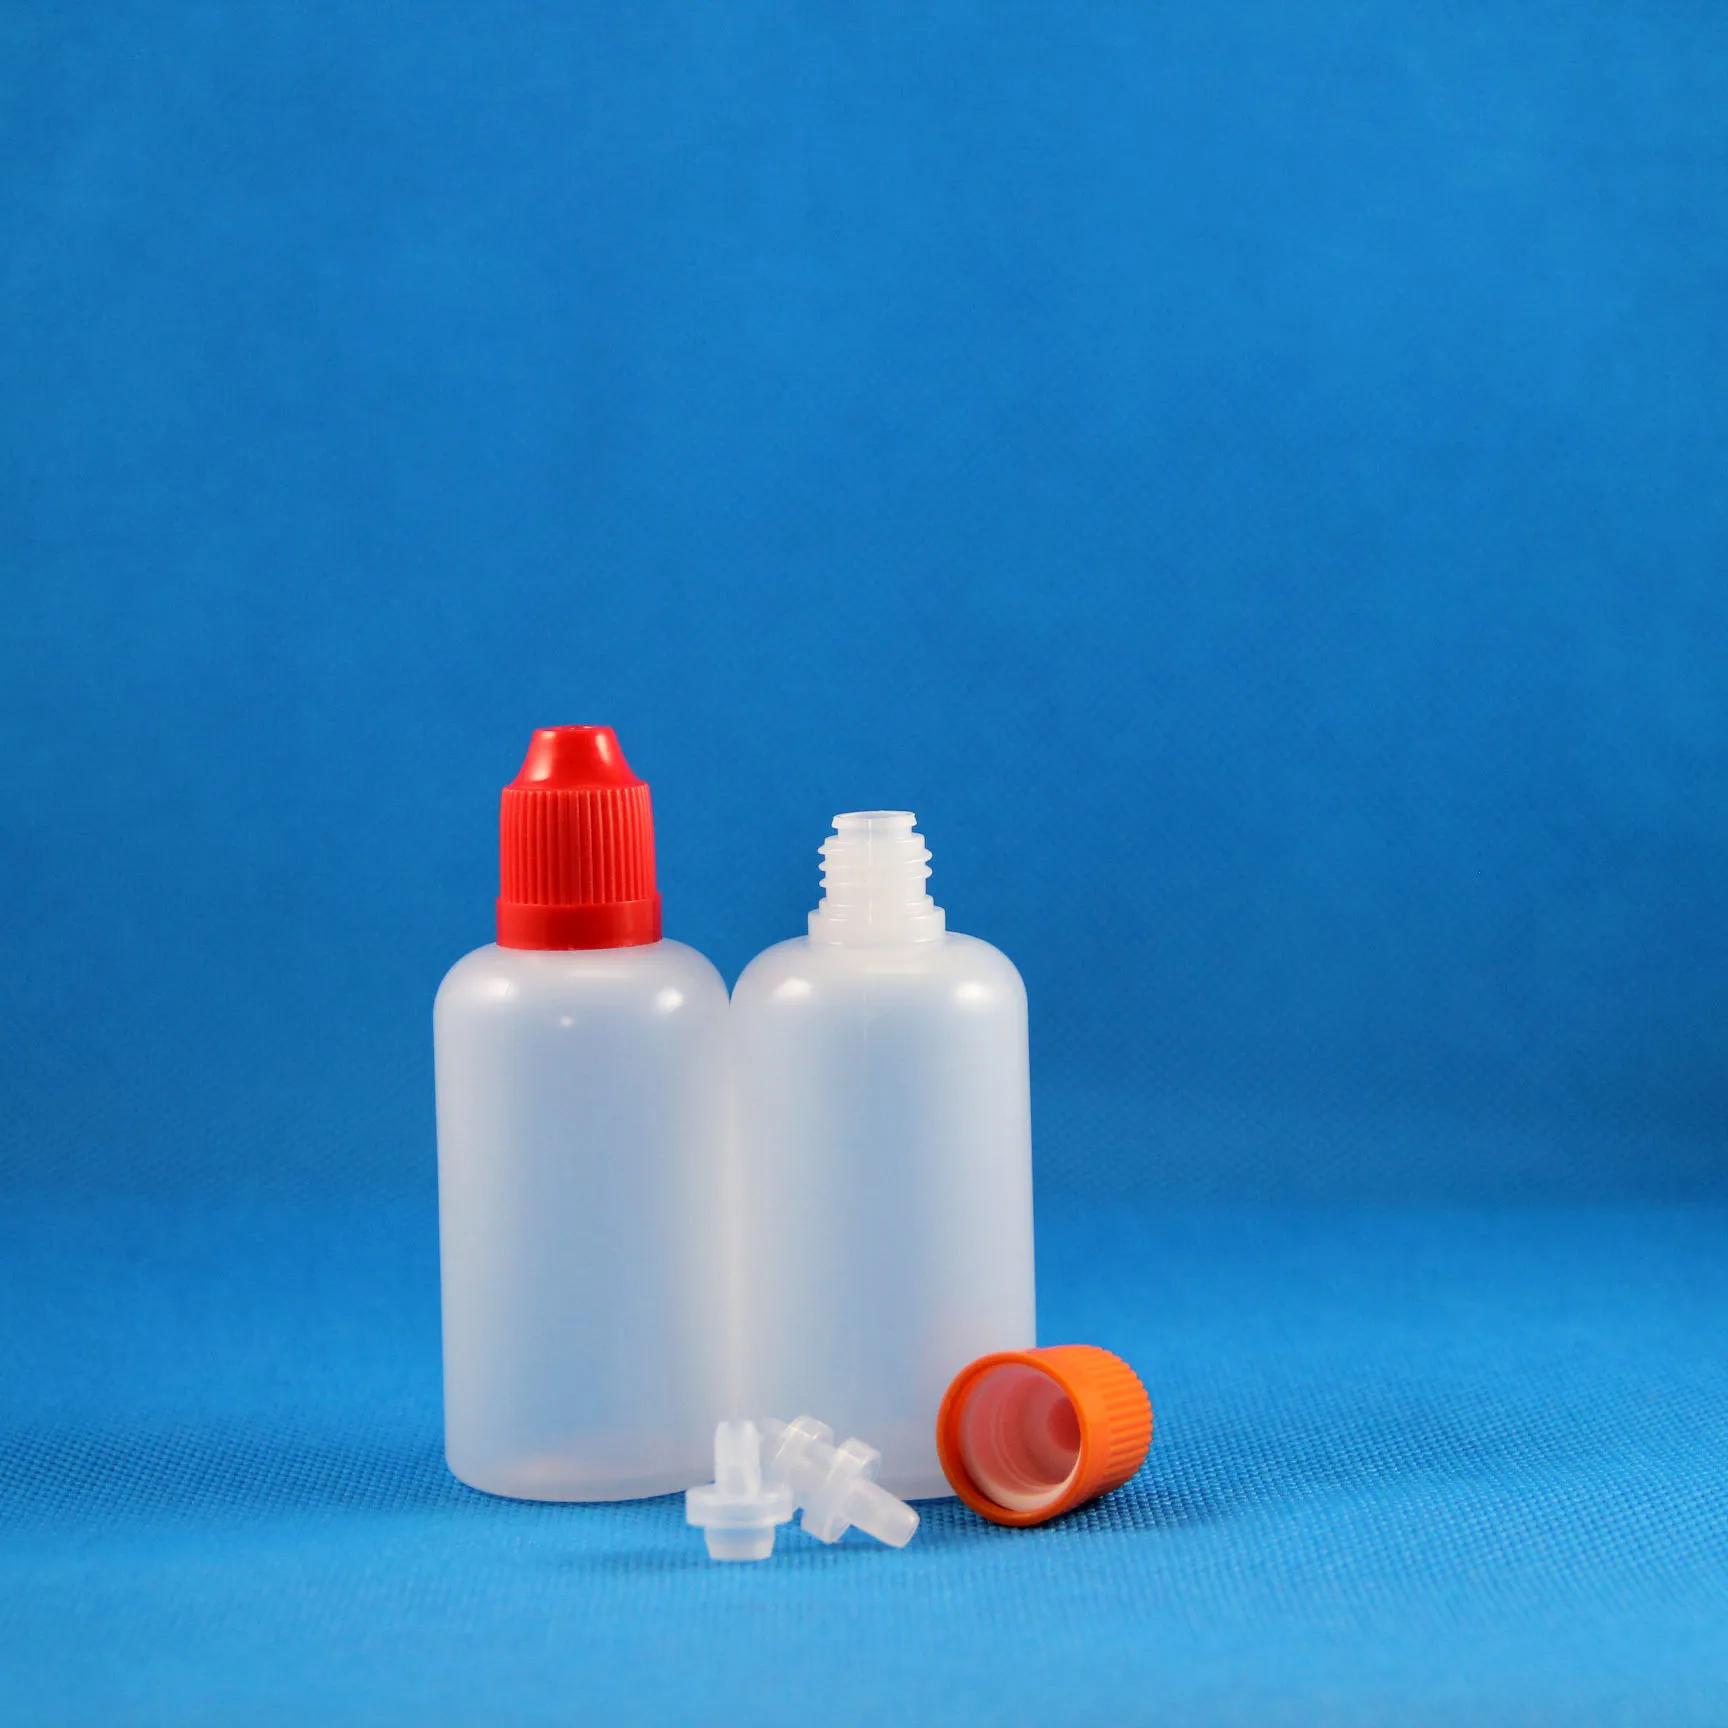 100 шт. 50 мл (5/3 унции) пластиковые бутылки-капельницы с крышками, защищенными от детей, безопасные крышки, полиэтиленовый магазин, дополнительная упаковка жидкостей 50 мл